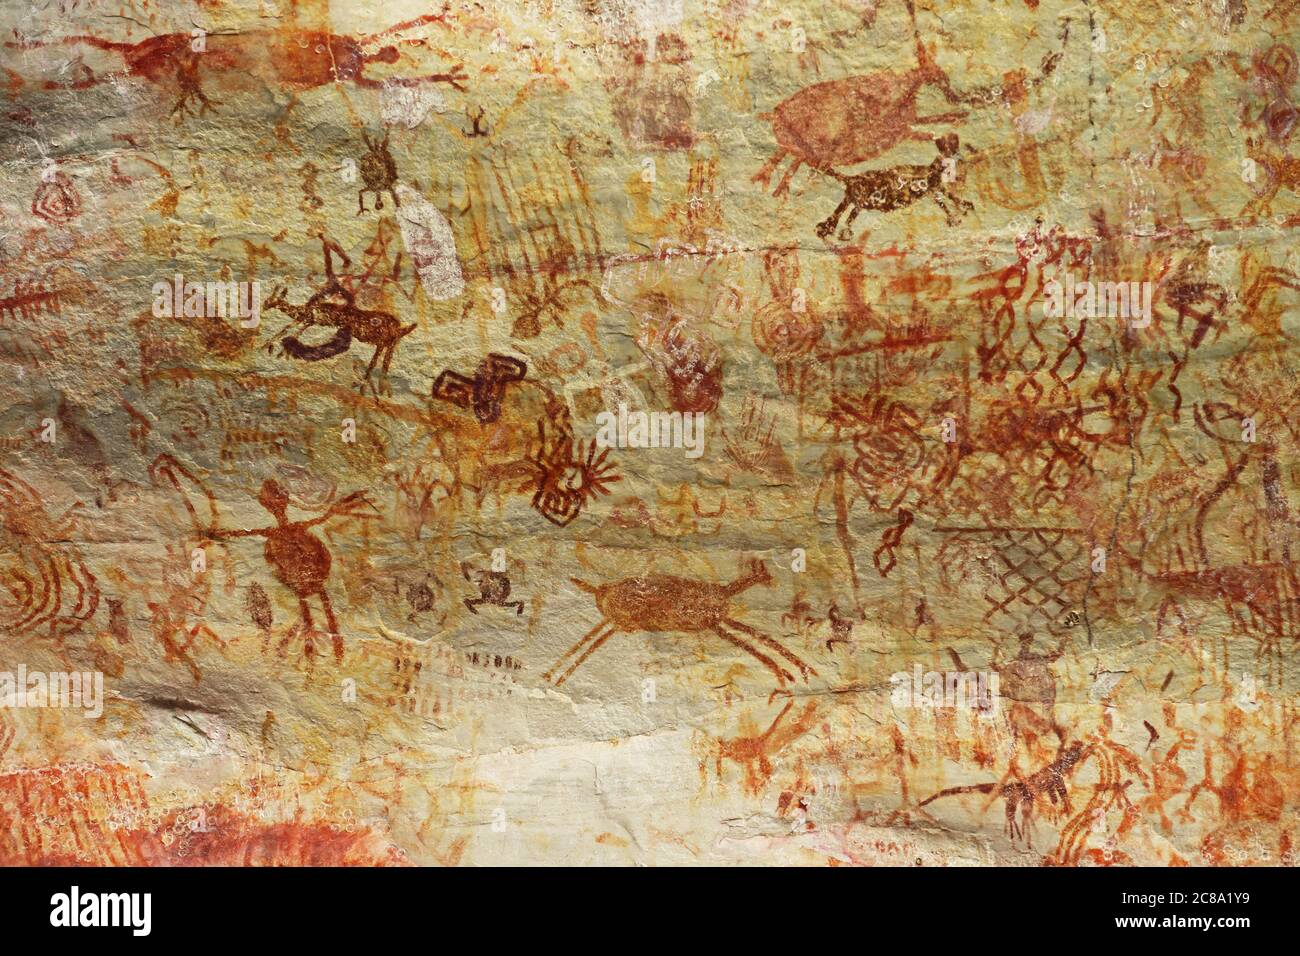 El arte rupestre prehistórico, pinturas en acantilado protegido la Lindosa, Colombia Foto de stock